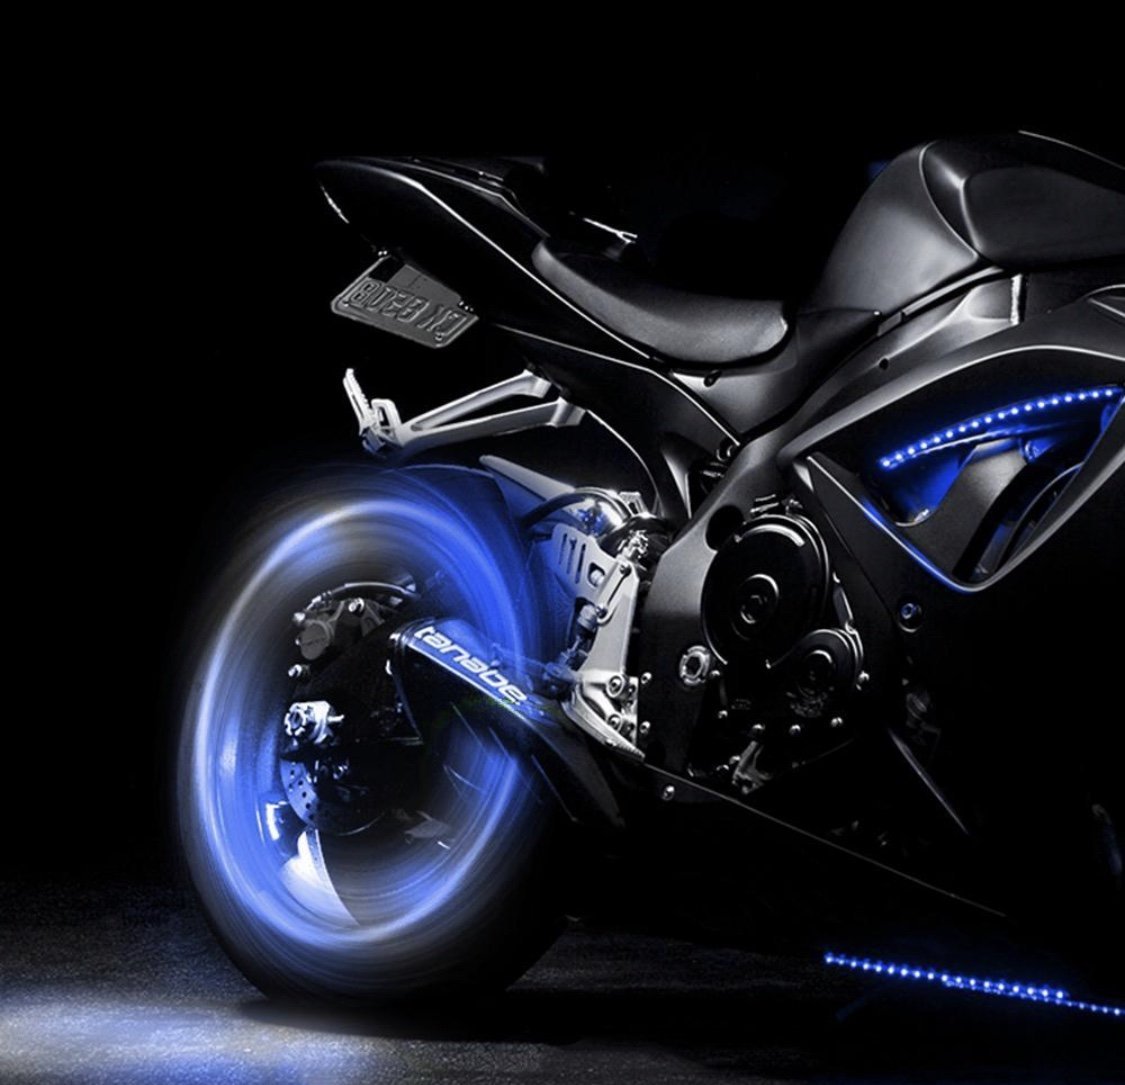 LED Nacht oder Deko Lampe mit Renn Motorrad Motiv - Lava Fernbedienung